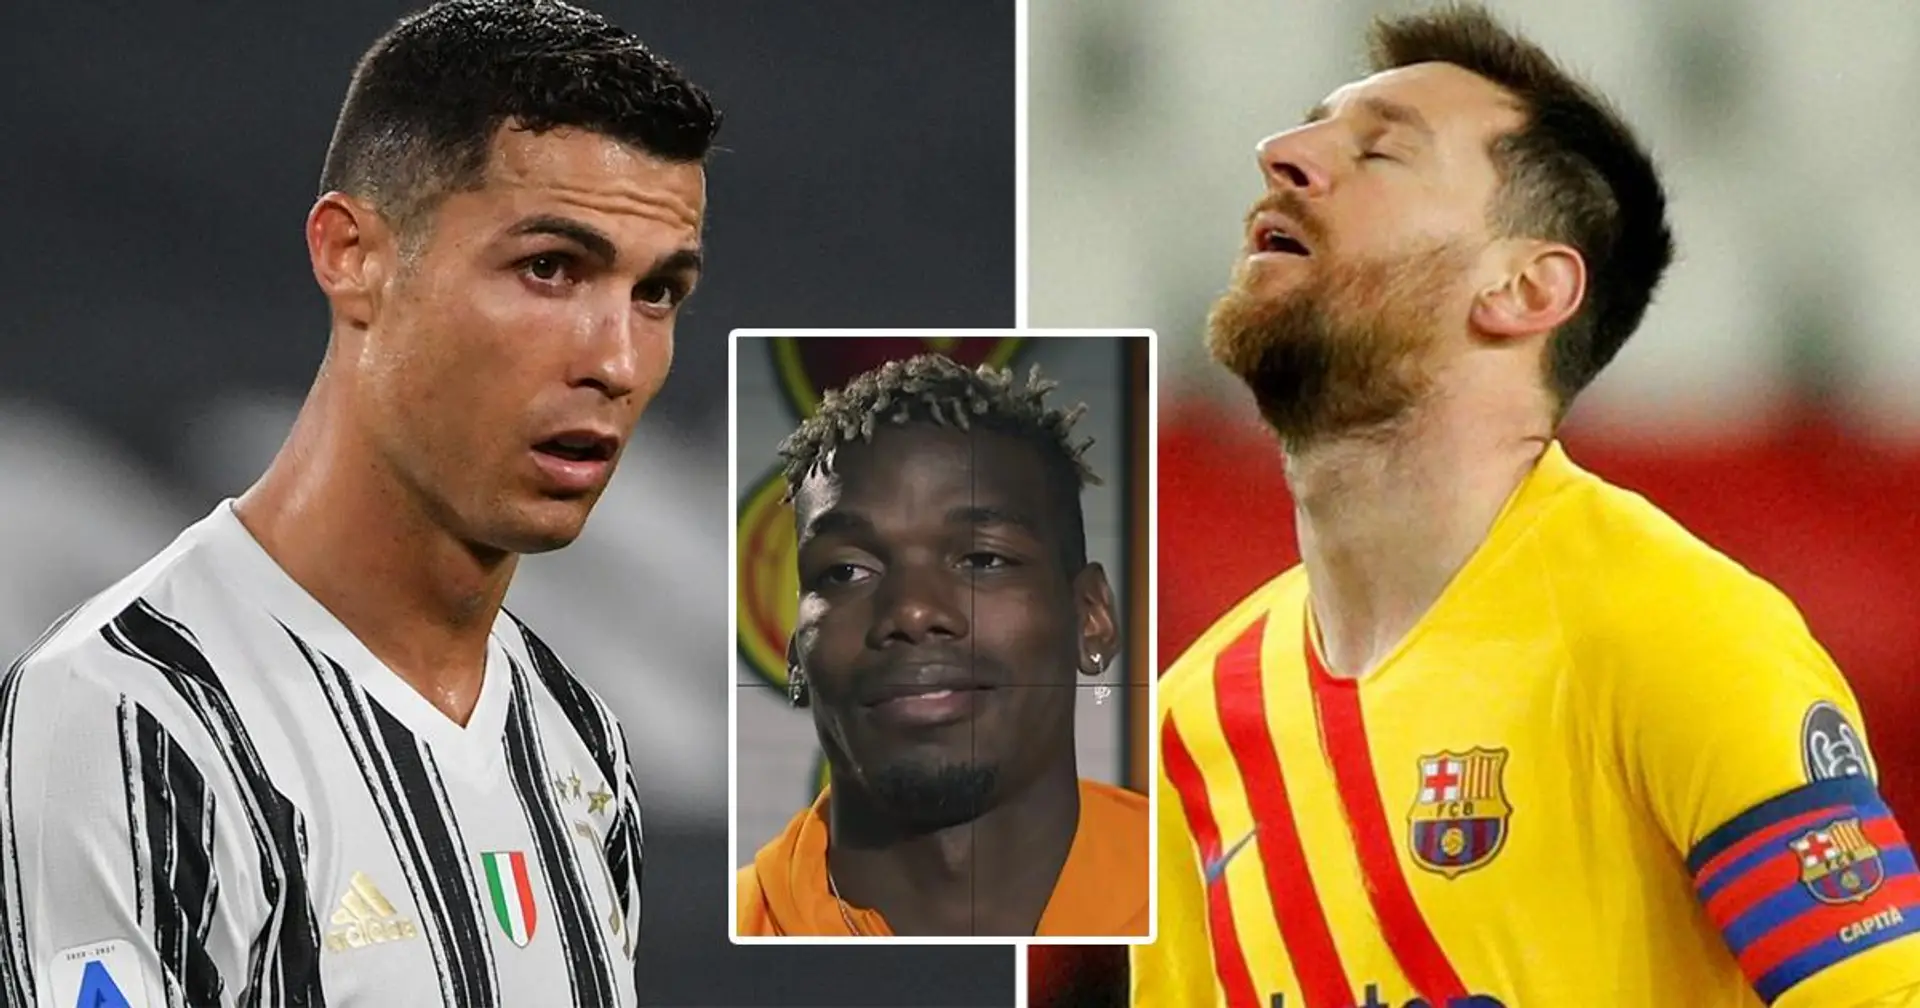 Paul Pogba cite une "bonne" chose à propos de l'élimination précoce de Messi et Ronaldo en Ligue des champions